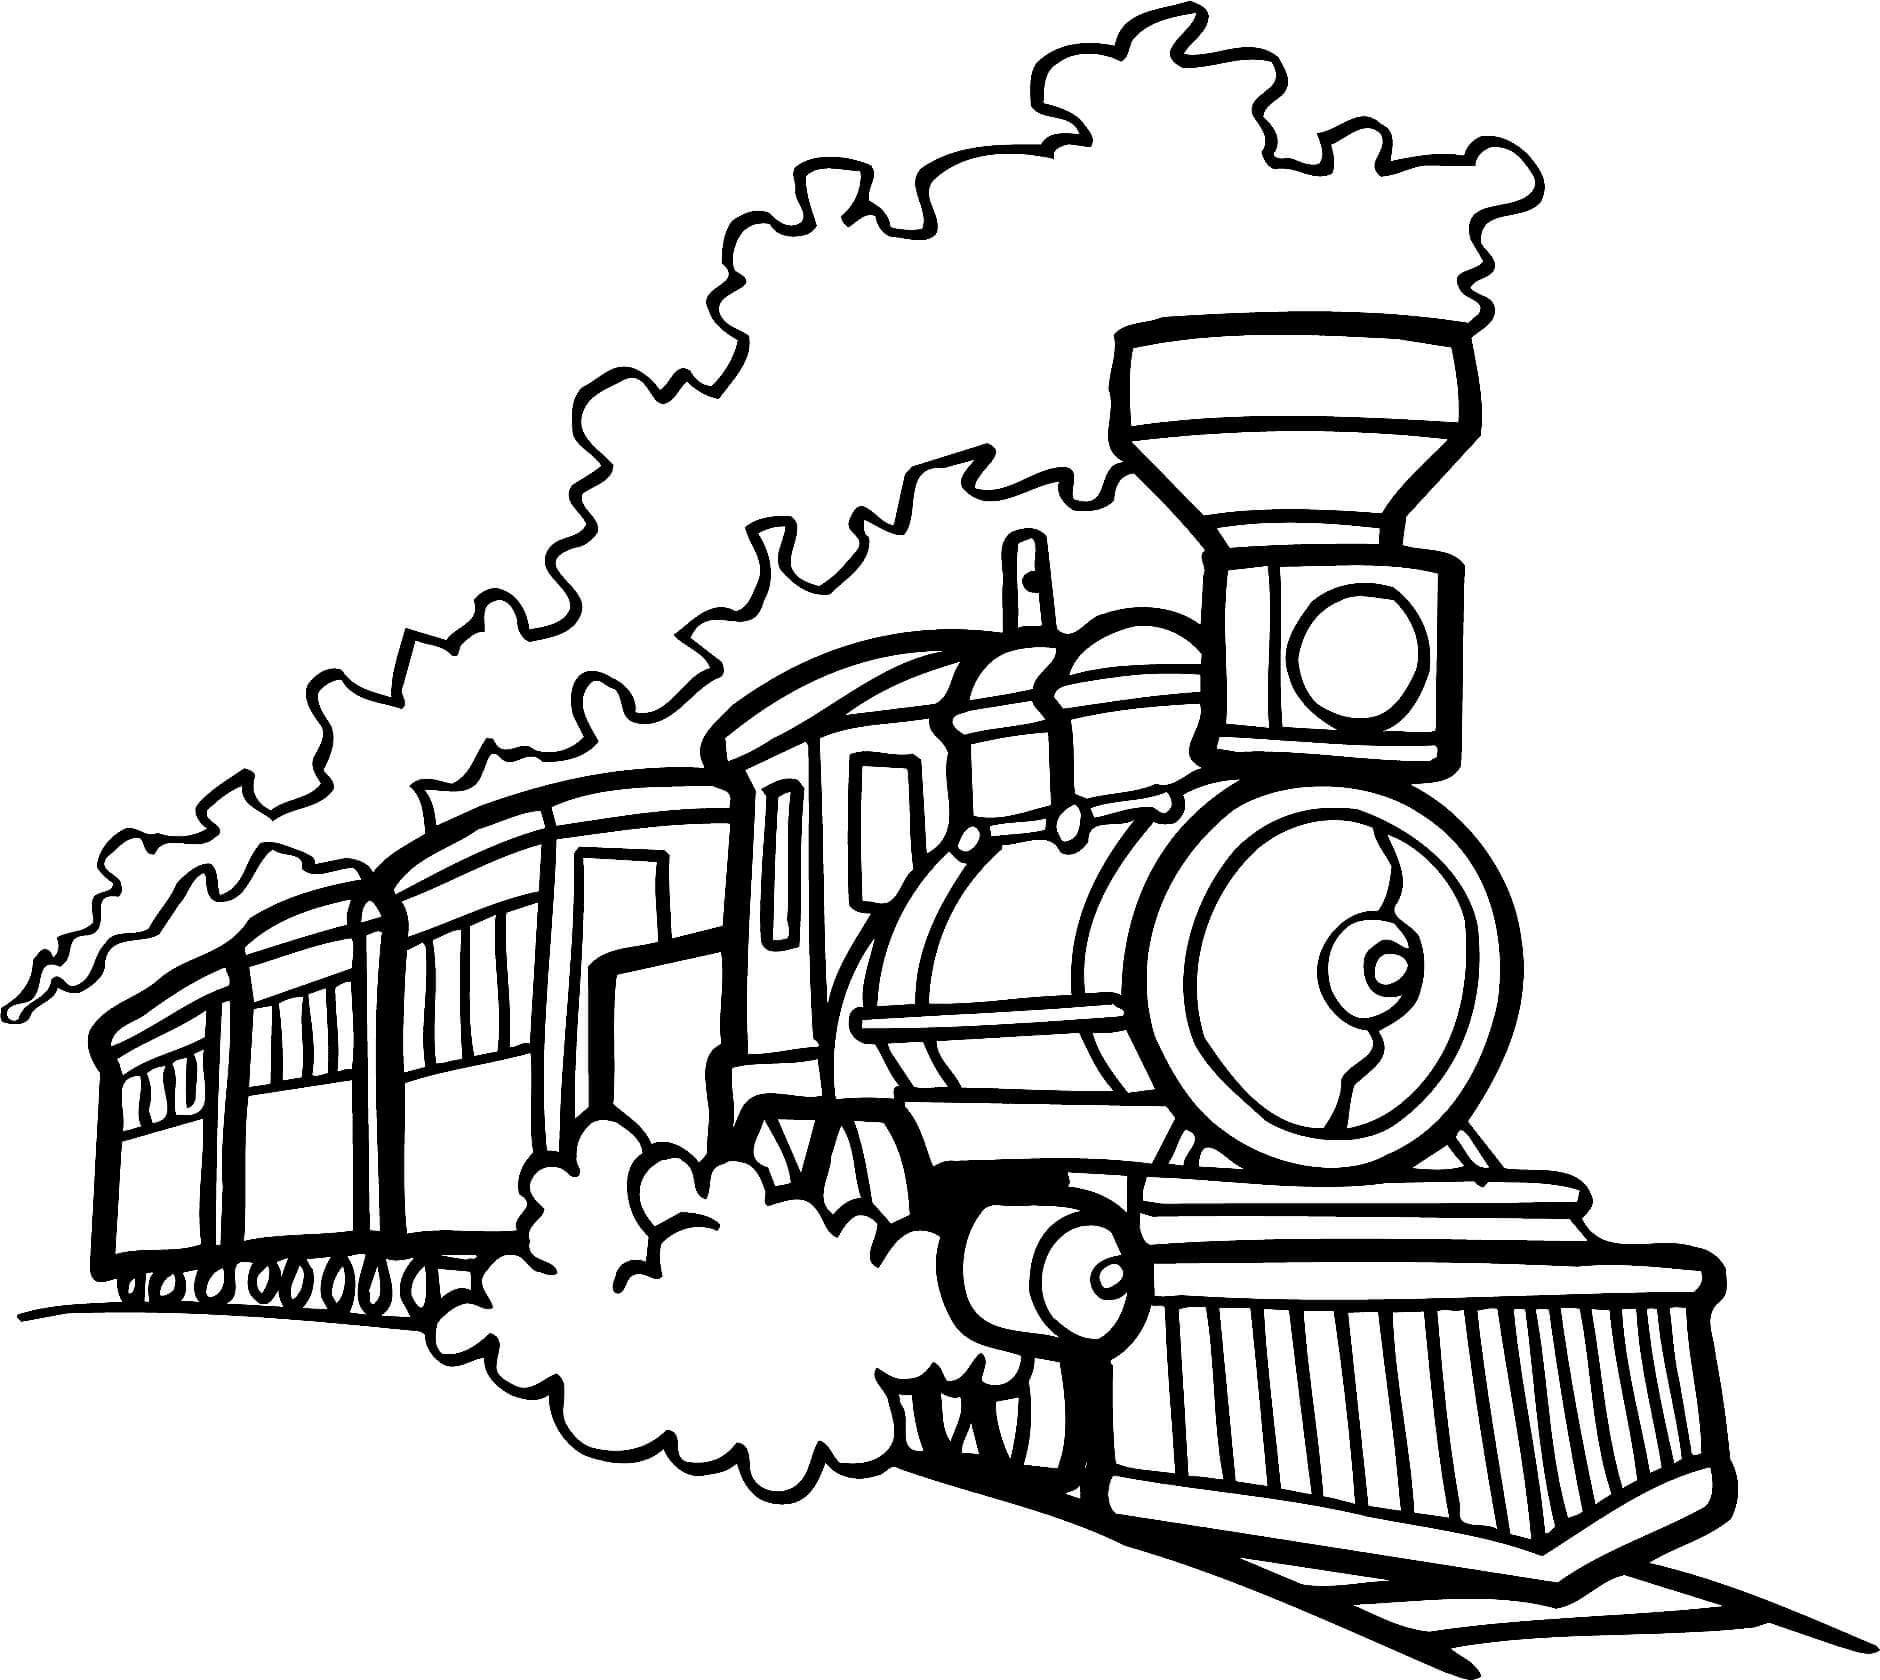 Un Train à Vapeur coloring page